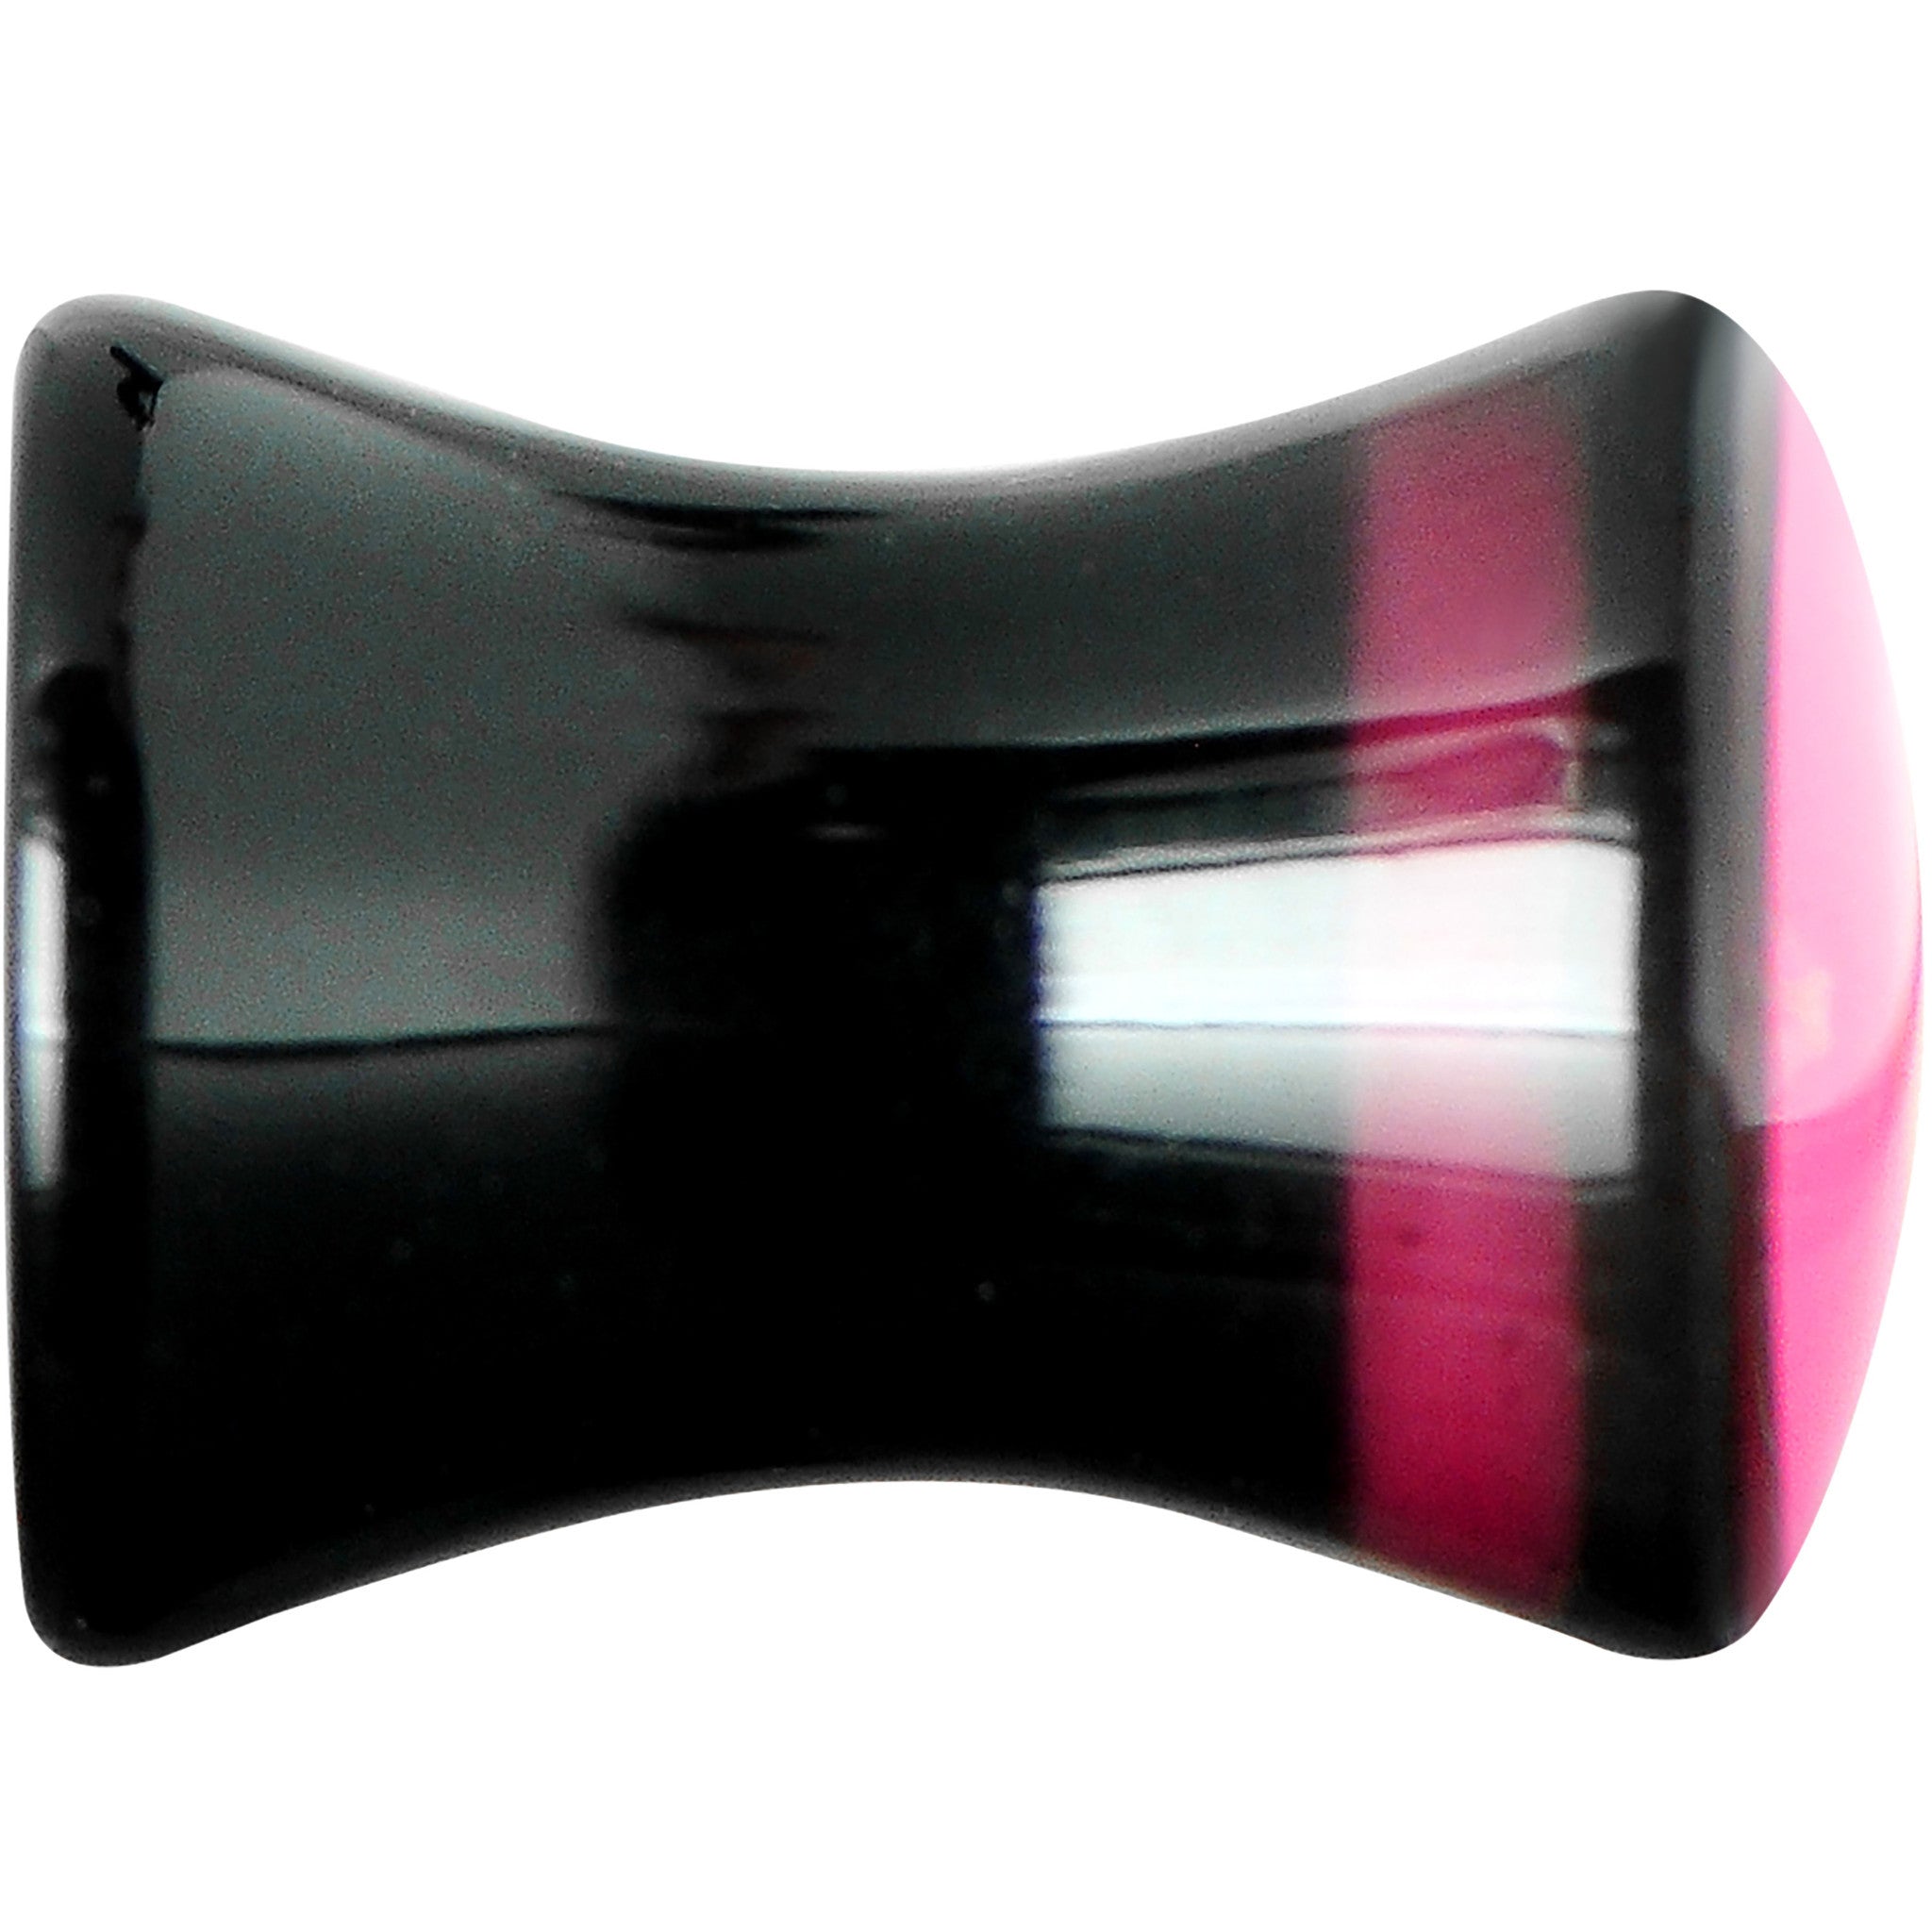 2 Gauge Black Acrylic Hot Pink Heart Saddle Plug